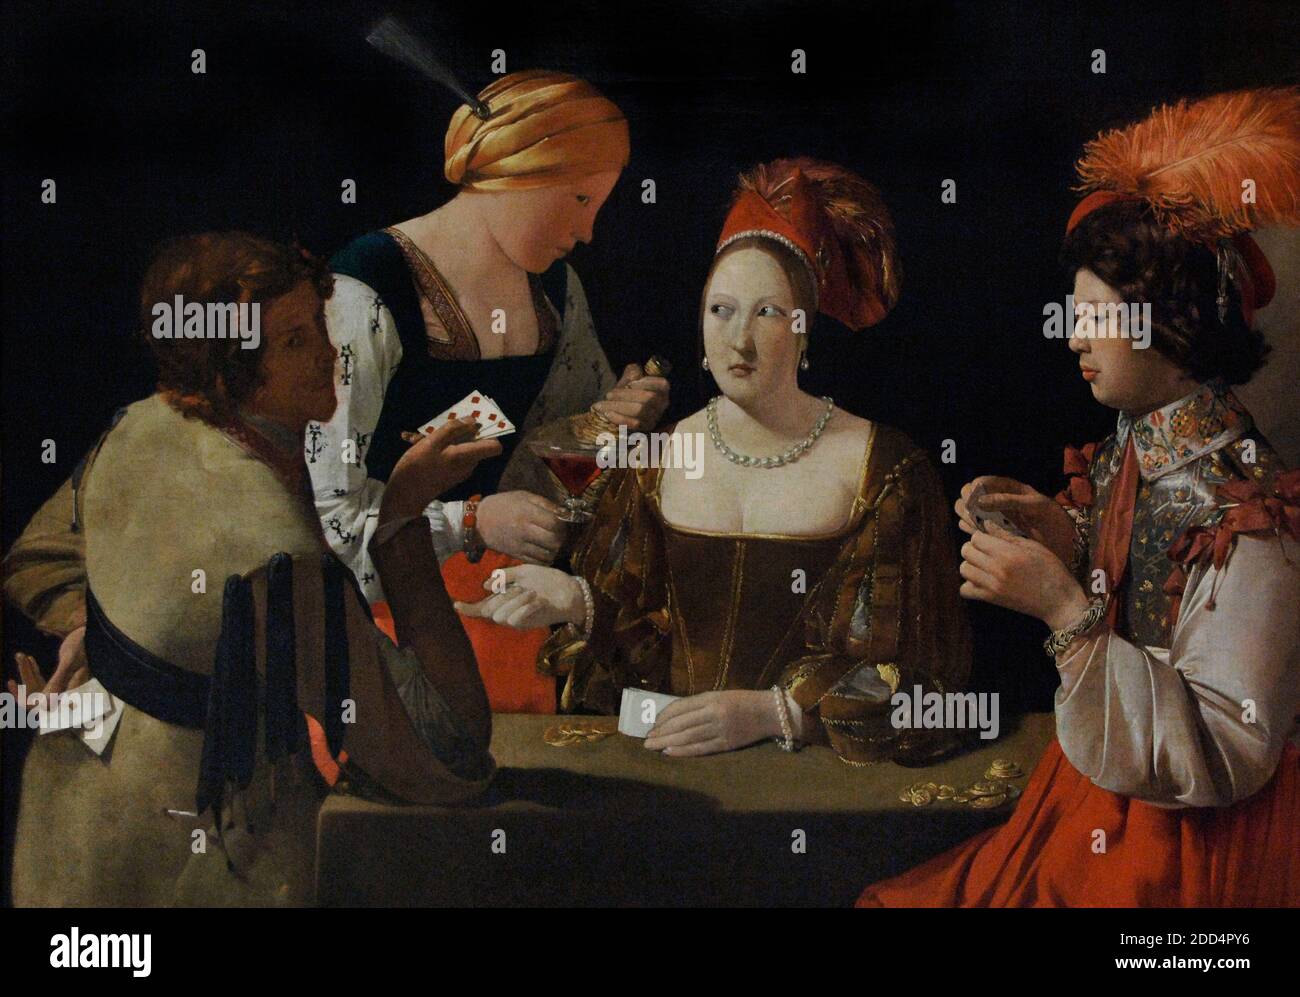 Georges de la Tour (1593-1652). Peintre baroque français. La chaleur avec l'As des diamants, ca.1635. Musée du Louvre. Paris. France. Banque D'Images